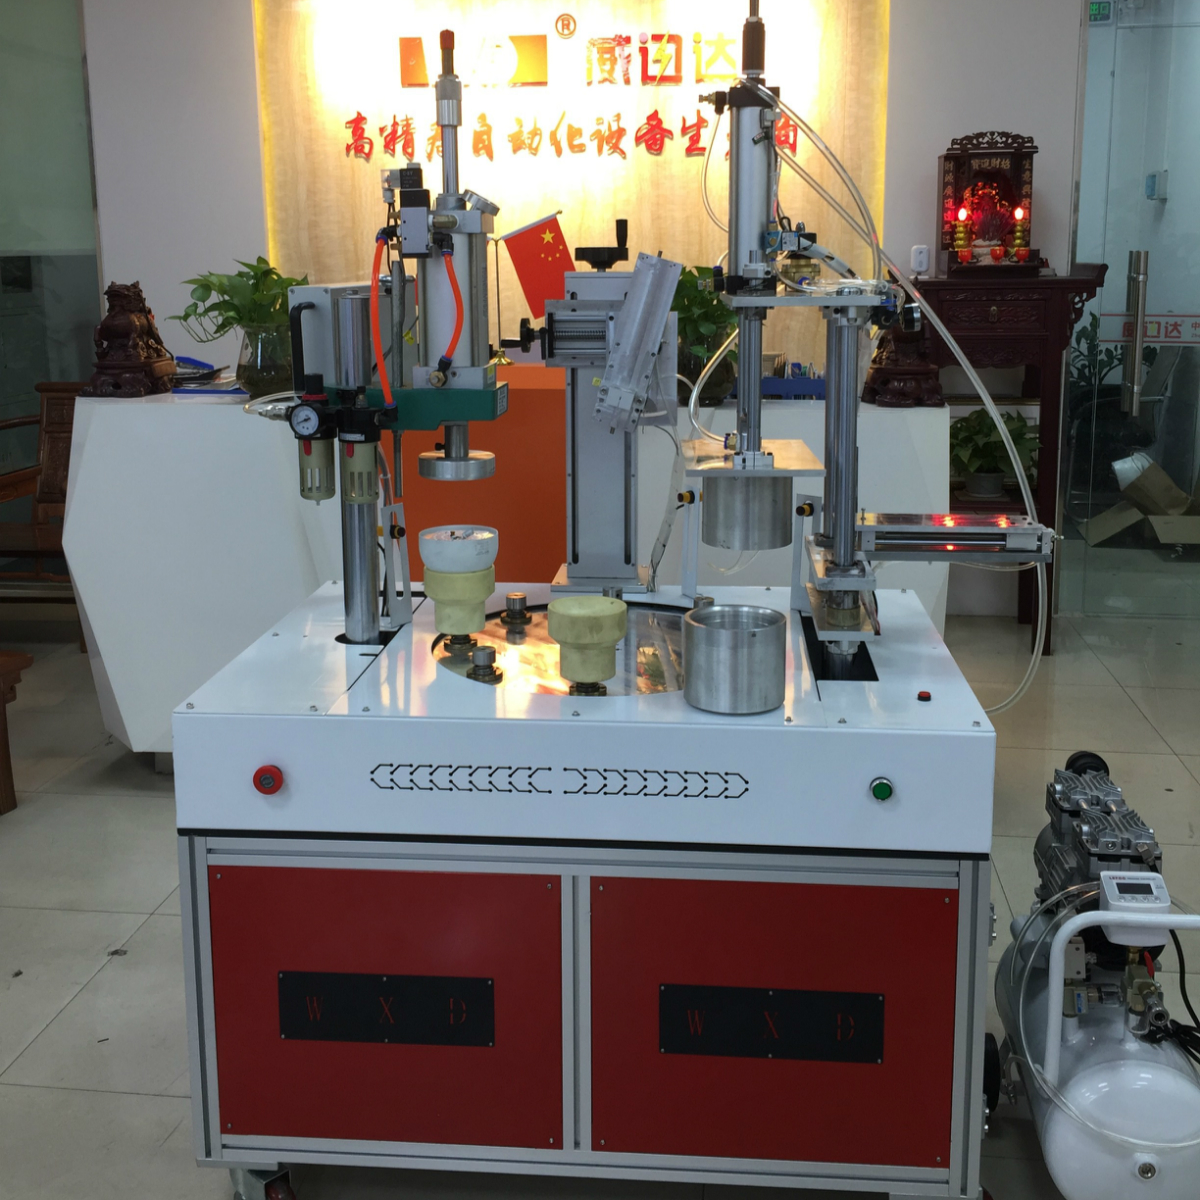 Bulb assembly machine automatic production machine